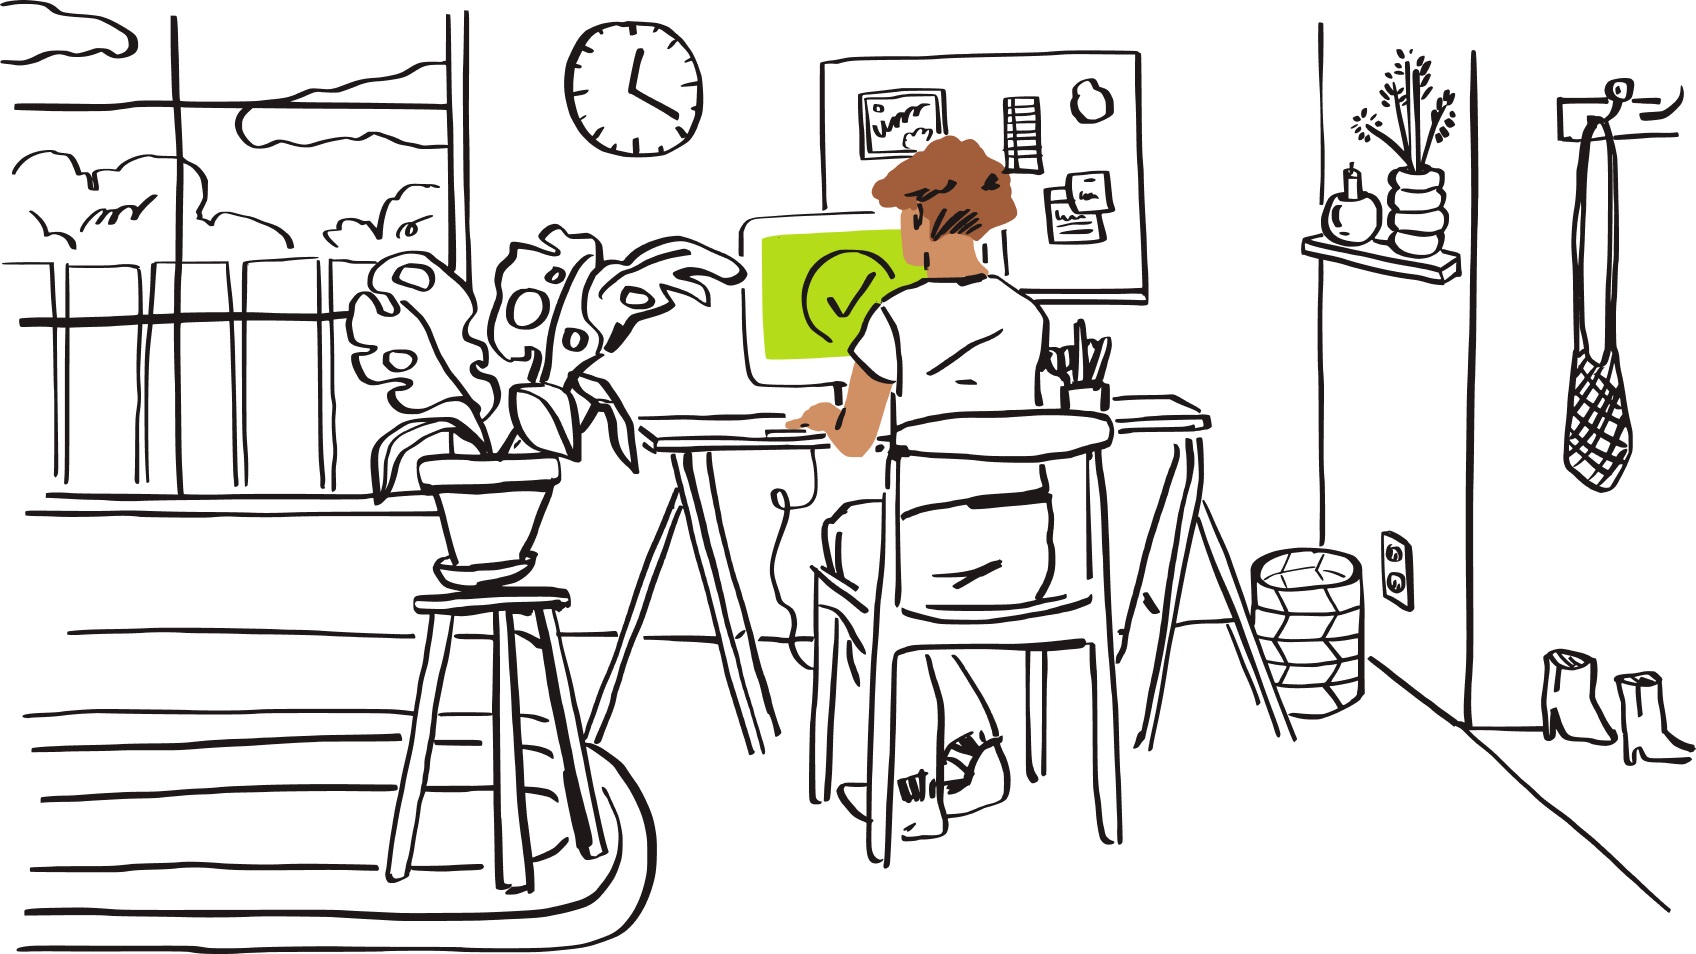 모니터에 녹색 화면과 체크 표시가 띄워진 홈 오피스 책상에 앉아 있는 원격 근무자